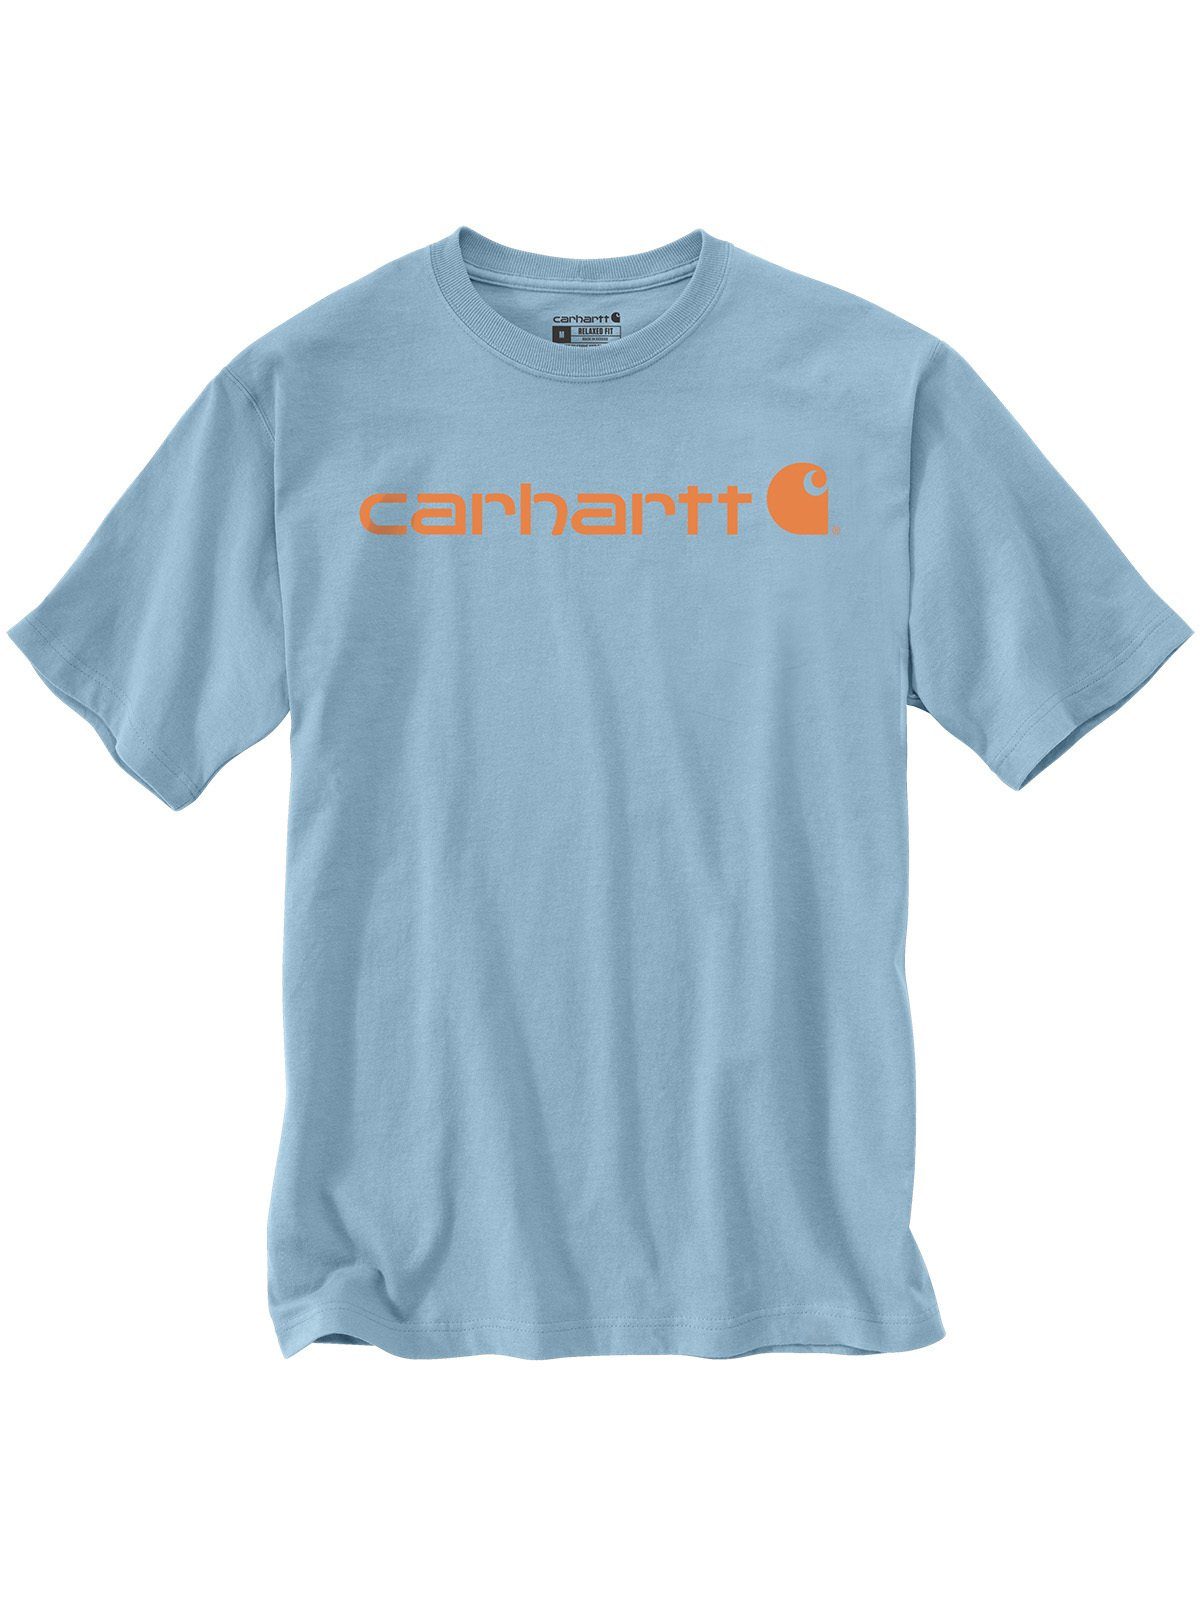 T-Shirts Herren OTTO kaufen Weiße für Carhartt online |